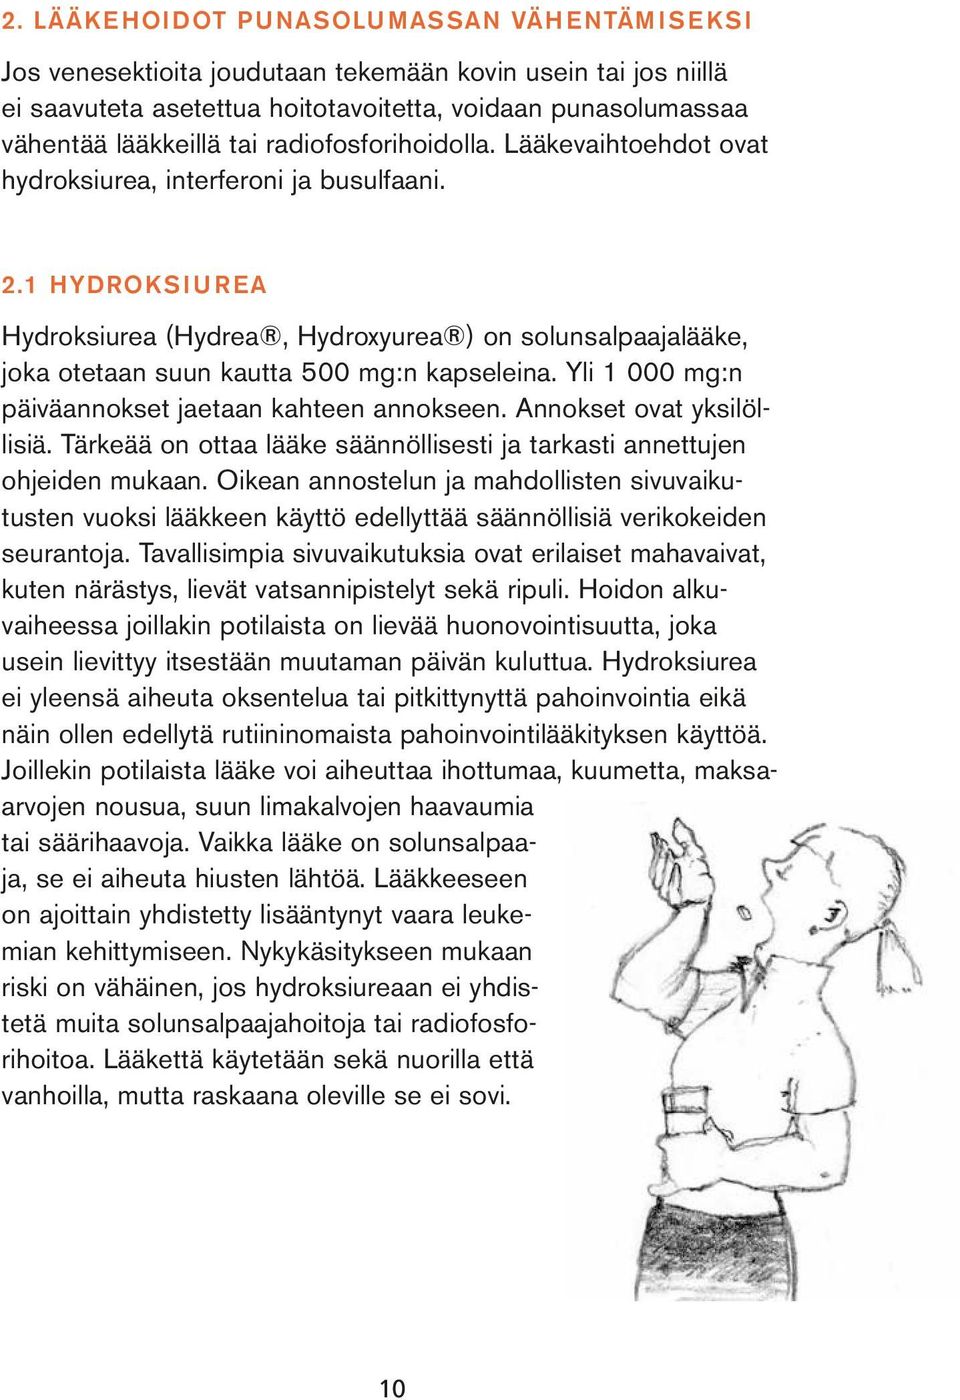 1 Hydroksiurea Hydroksiurea (Hydrea, Hydroxyurea ) on solunsalpaajalääke, joka otetaan suun kautta 500 mg:n kapseleina. Yli 1 000 mg:n päiväannokset jaetaan kahteen annokseen.